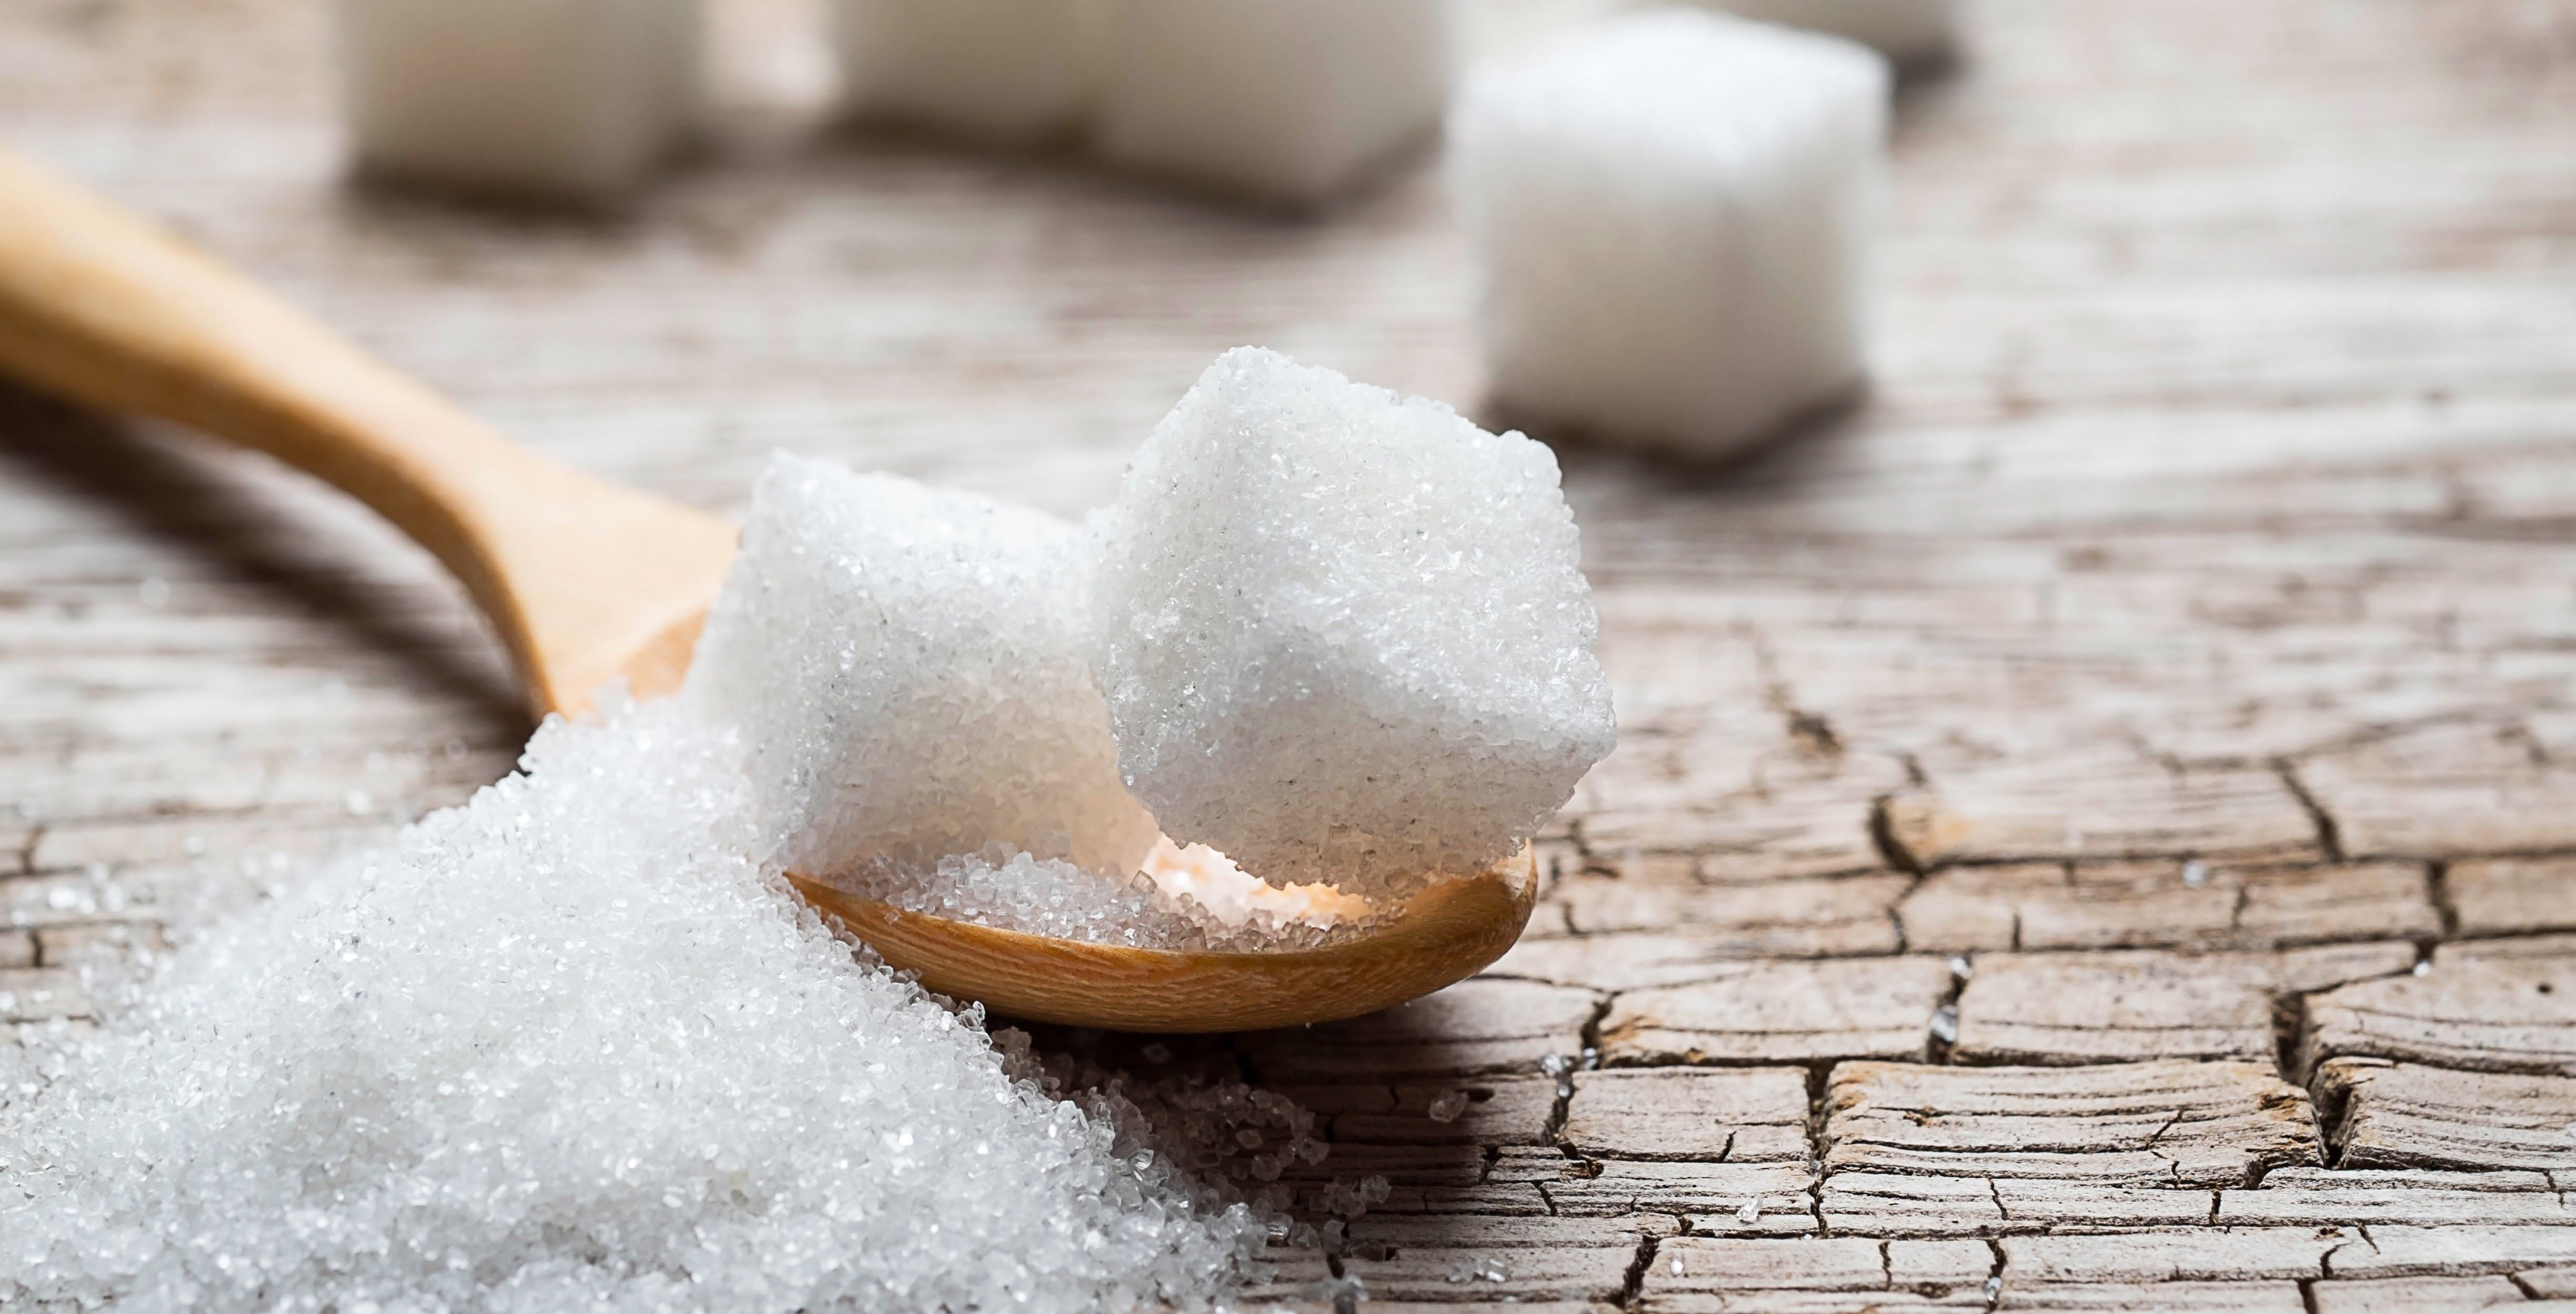 Cukorexport-tilalmat jelenthet be az egyik legjelentősebb cukortermelő